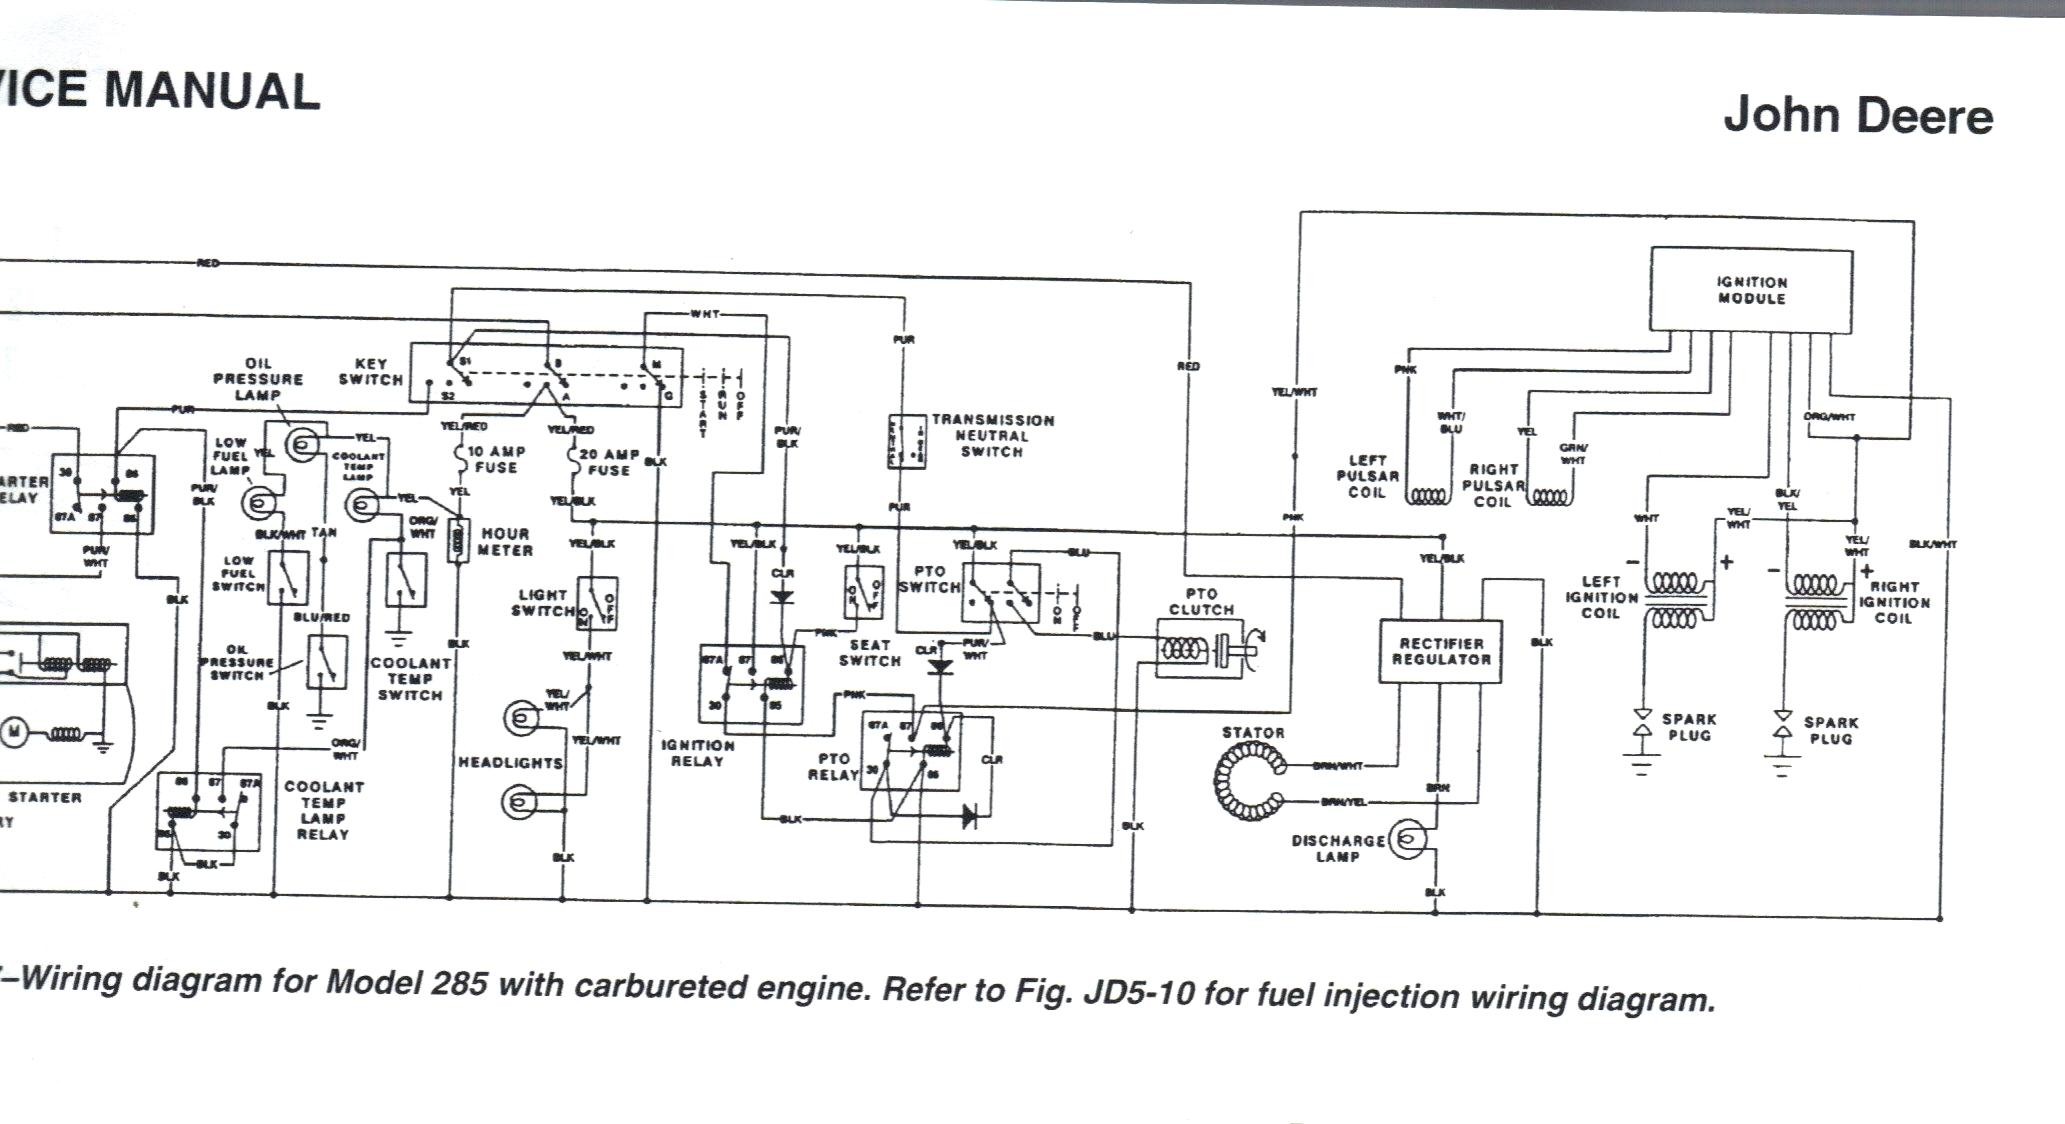 John Deere Wiring Schematic Wiring Diagram Data John Deere Z225 Carburetor John Deere Z225 Wiring Diagram